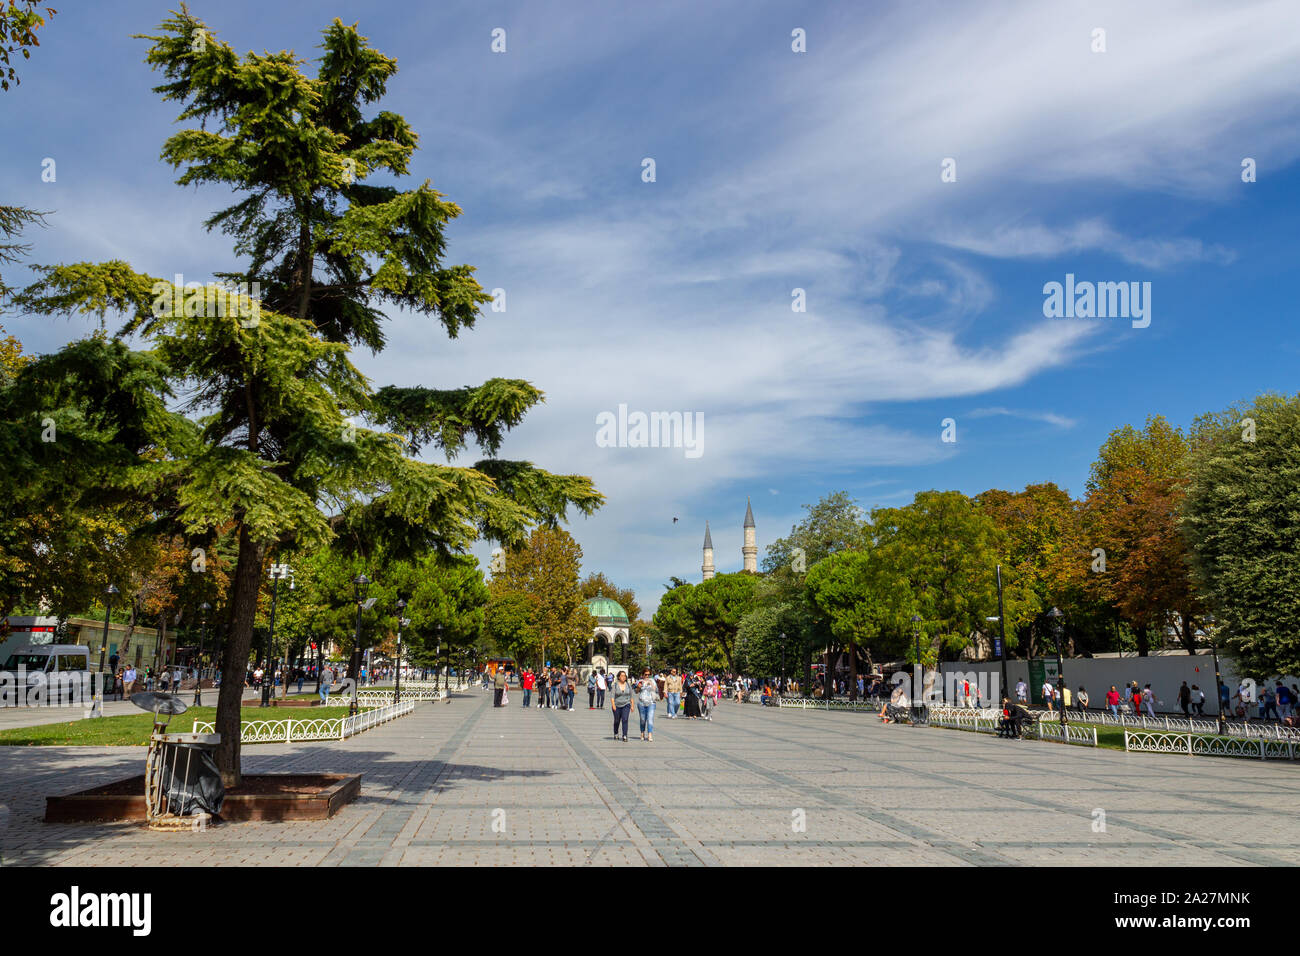 Sultanahmet, Istanbul/Türkei - am 23. September 2019: Istanbuler beliebte touristische Destination von Sultanahmet Square an einem sonnigen Tag Stockfoto